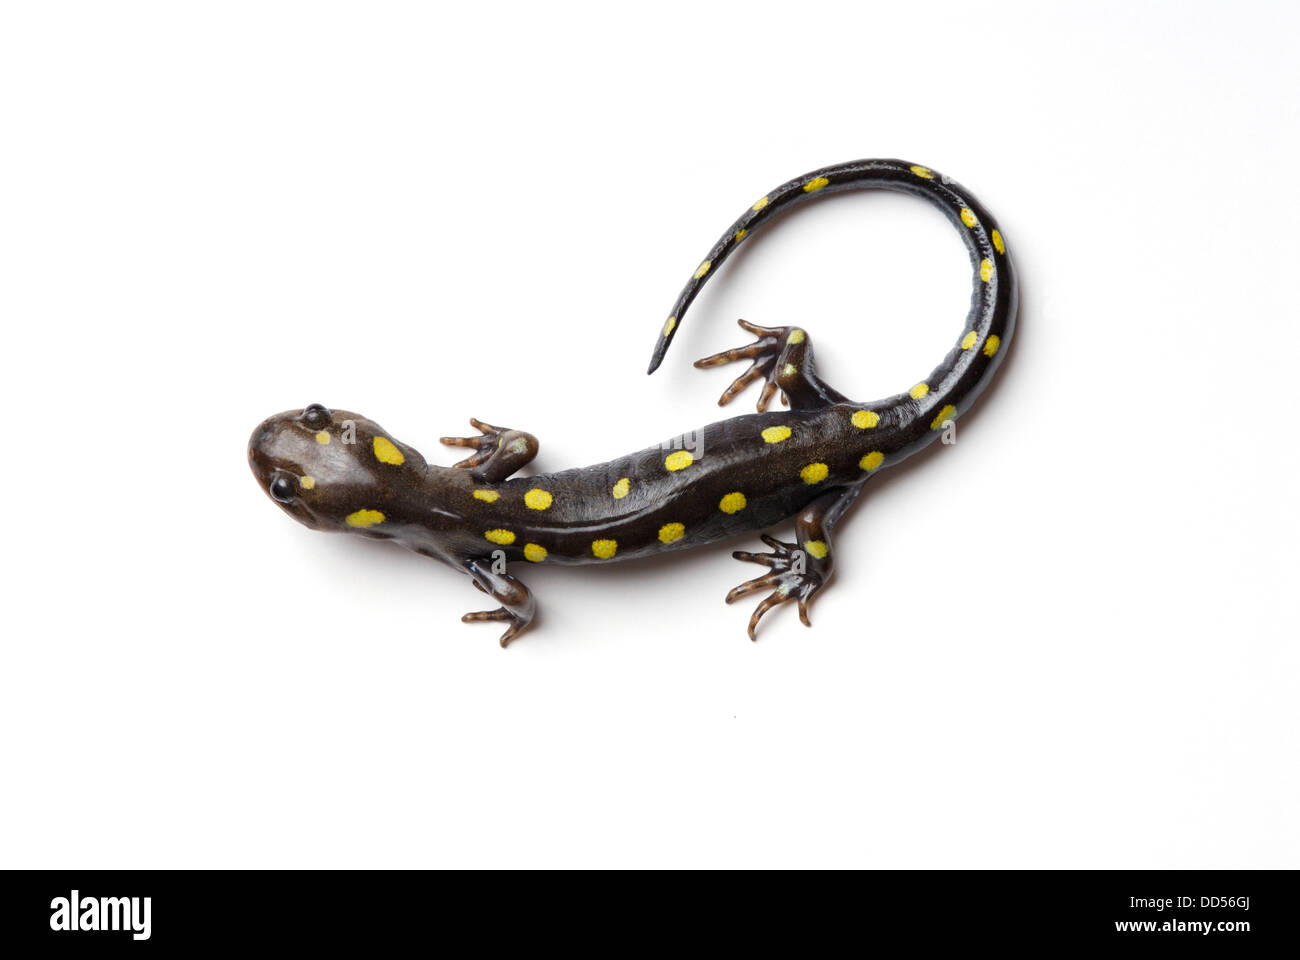 Spotted salamander, Ambystoma maculatum. Stock Photo